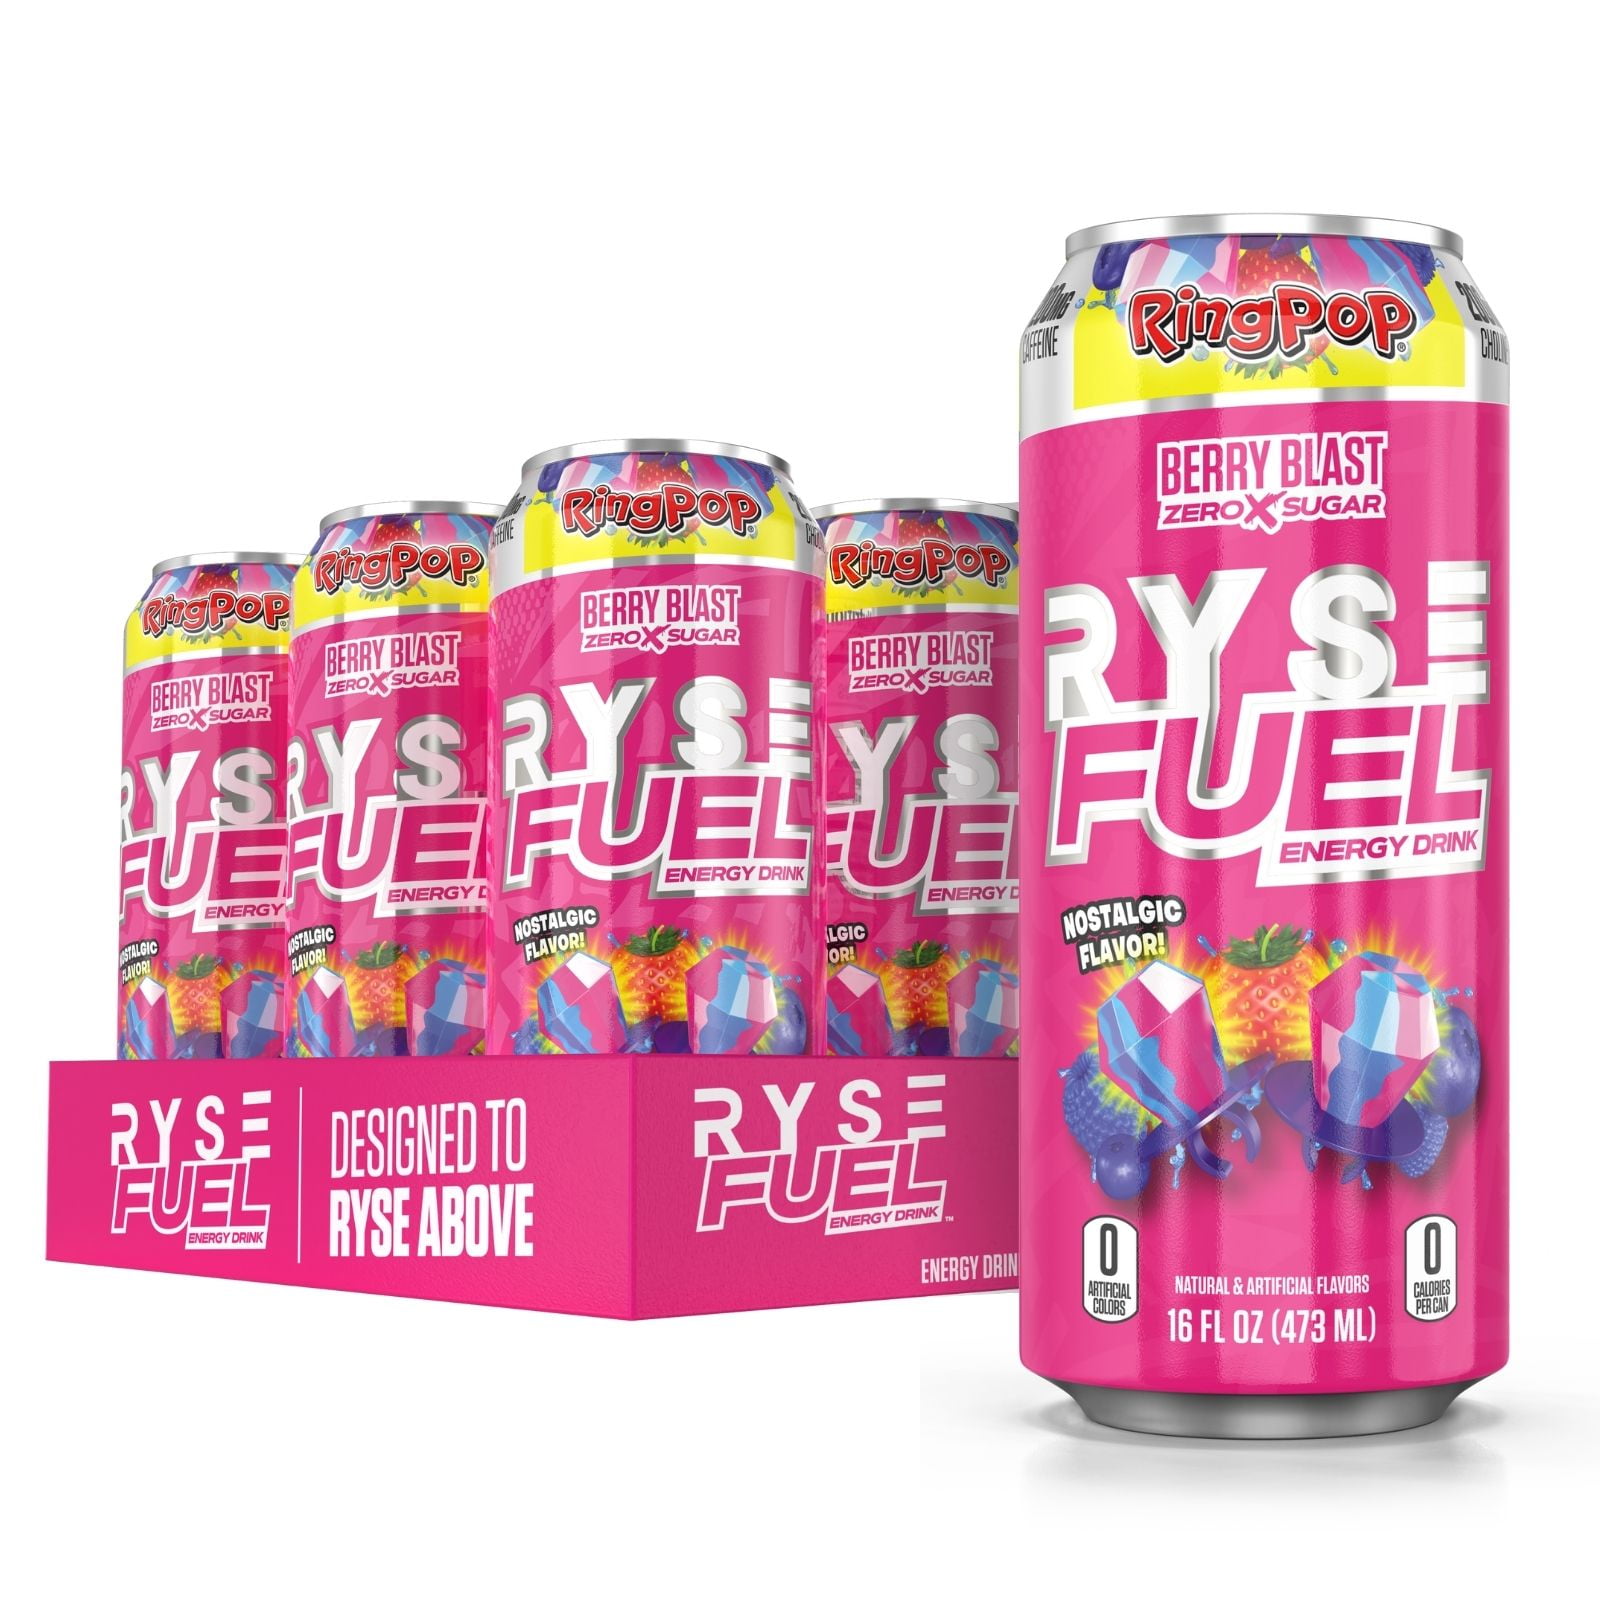 RYSE Fuel Sugar Free Energy Drink